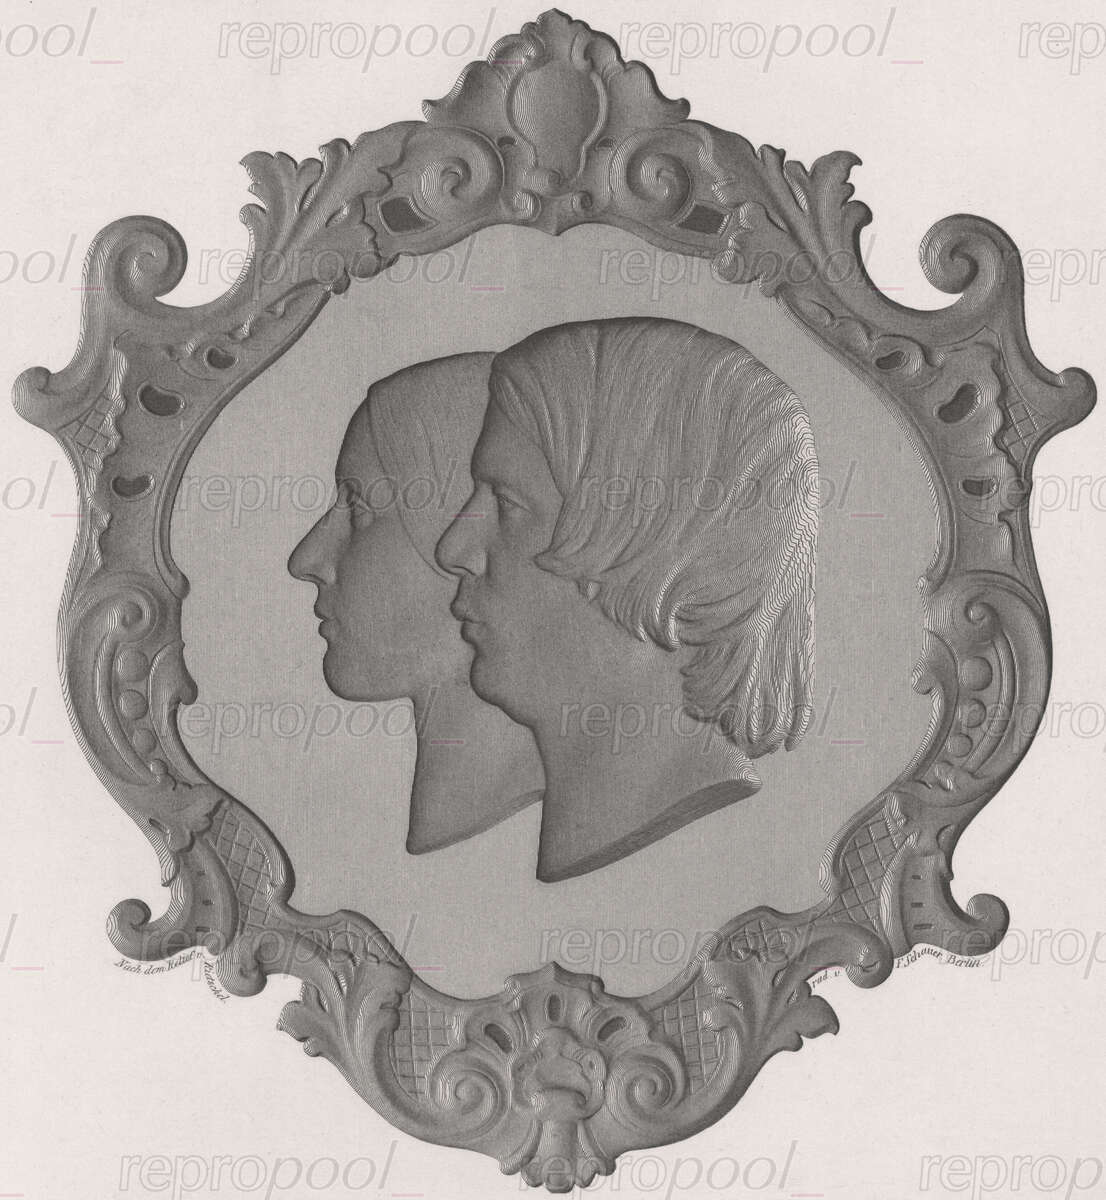 Robert Schumann; Radierung von Friedrich Schauer;<br>nach: Relief von Ernst Rietschel (1846)